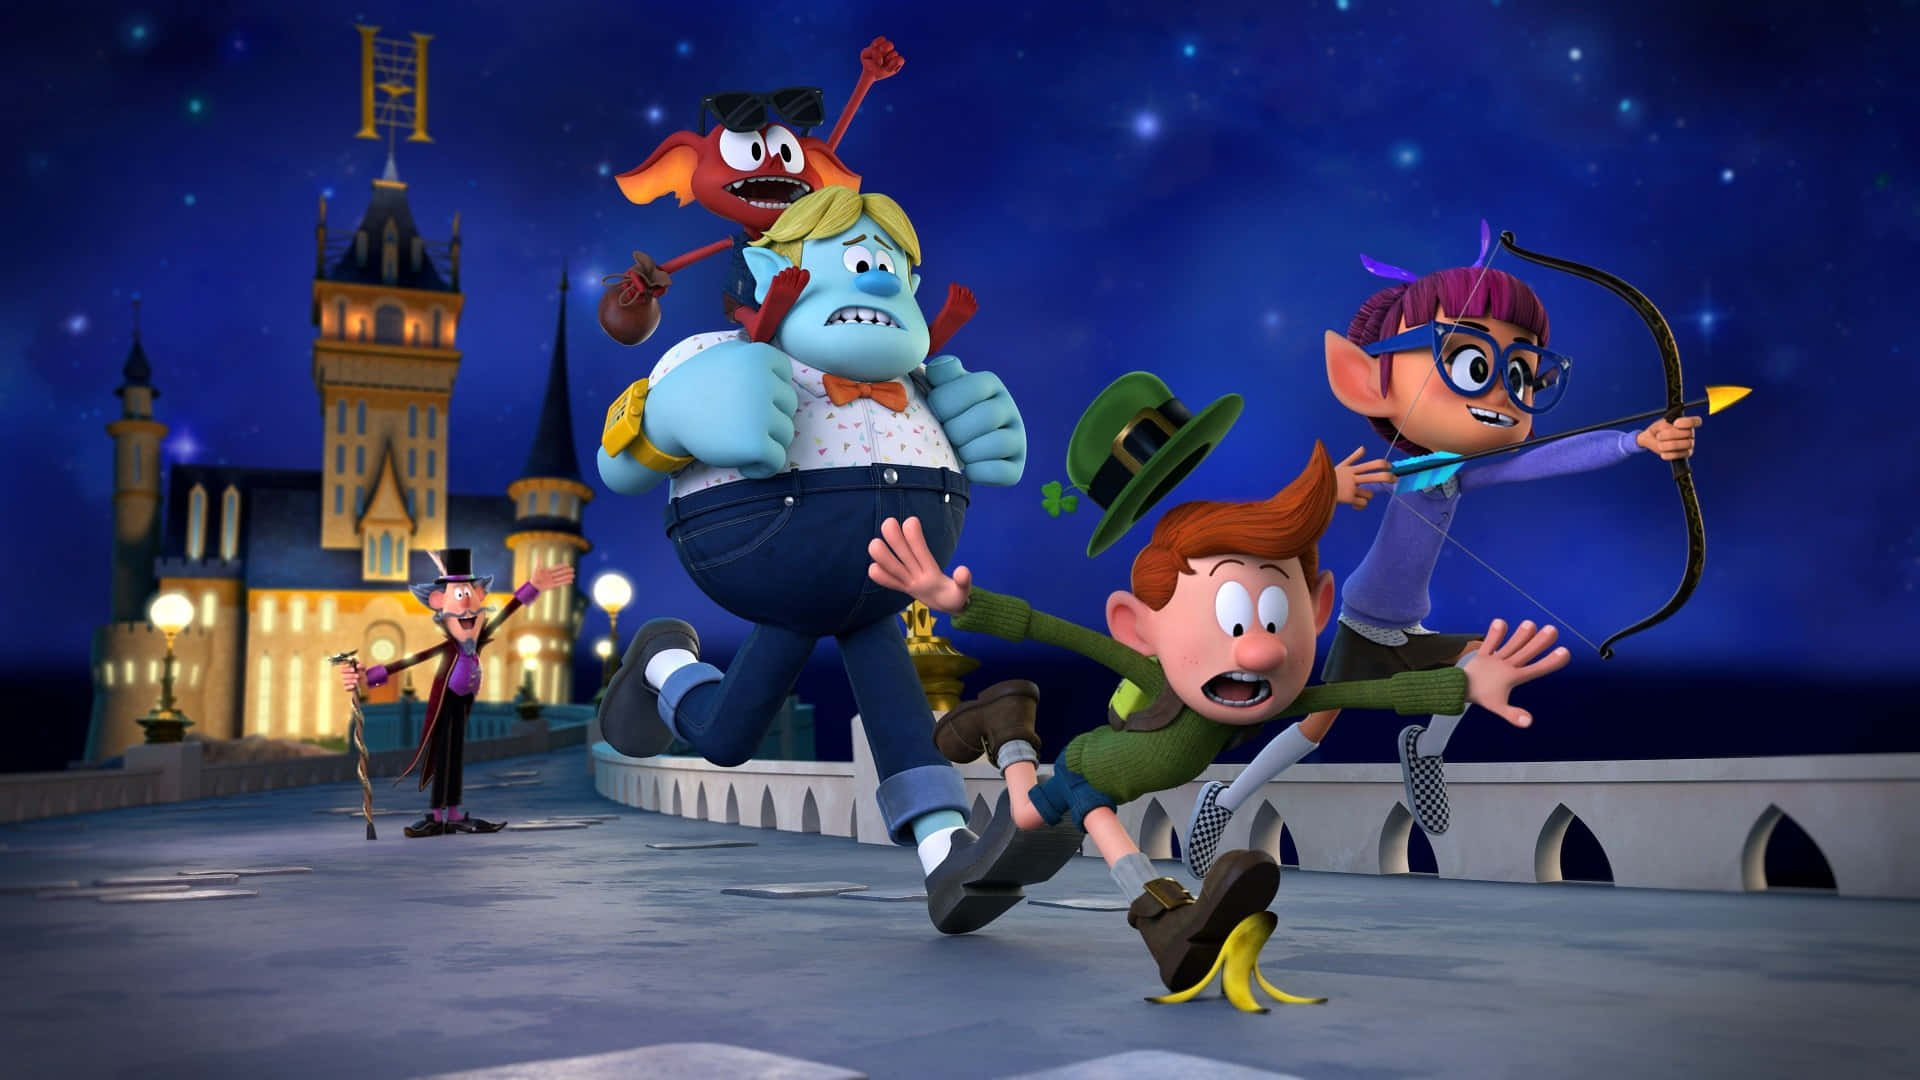 Ungrupo De Personajes De Dibujos Animados Está Corriendo Frente A Un Castillo. Fondo de pantalla